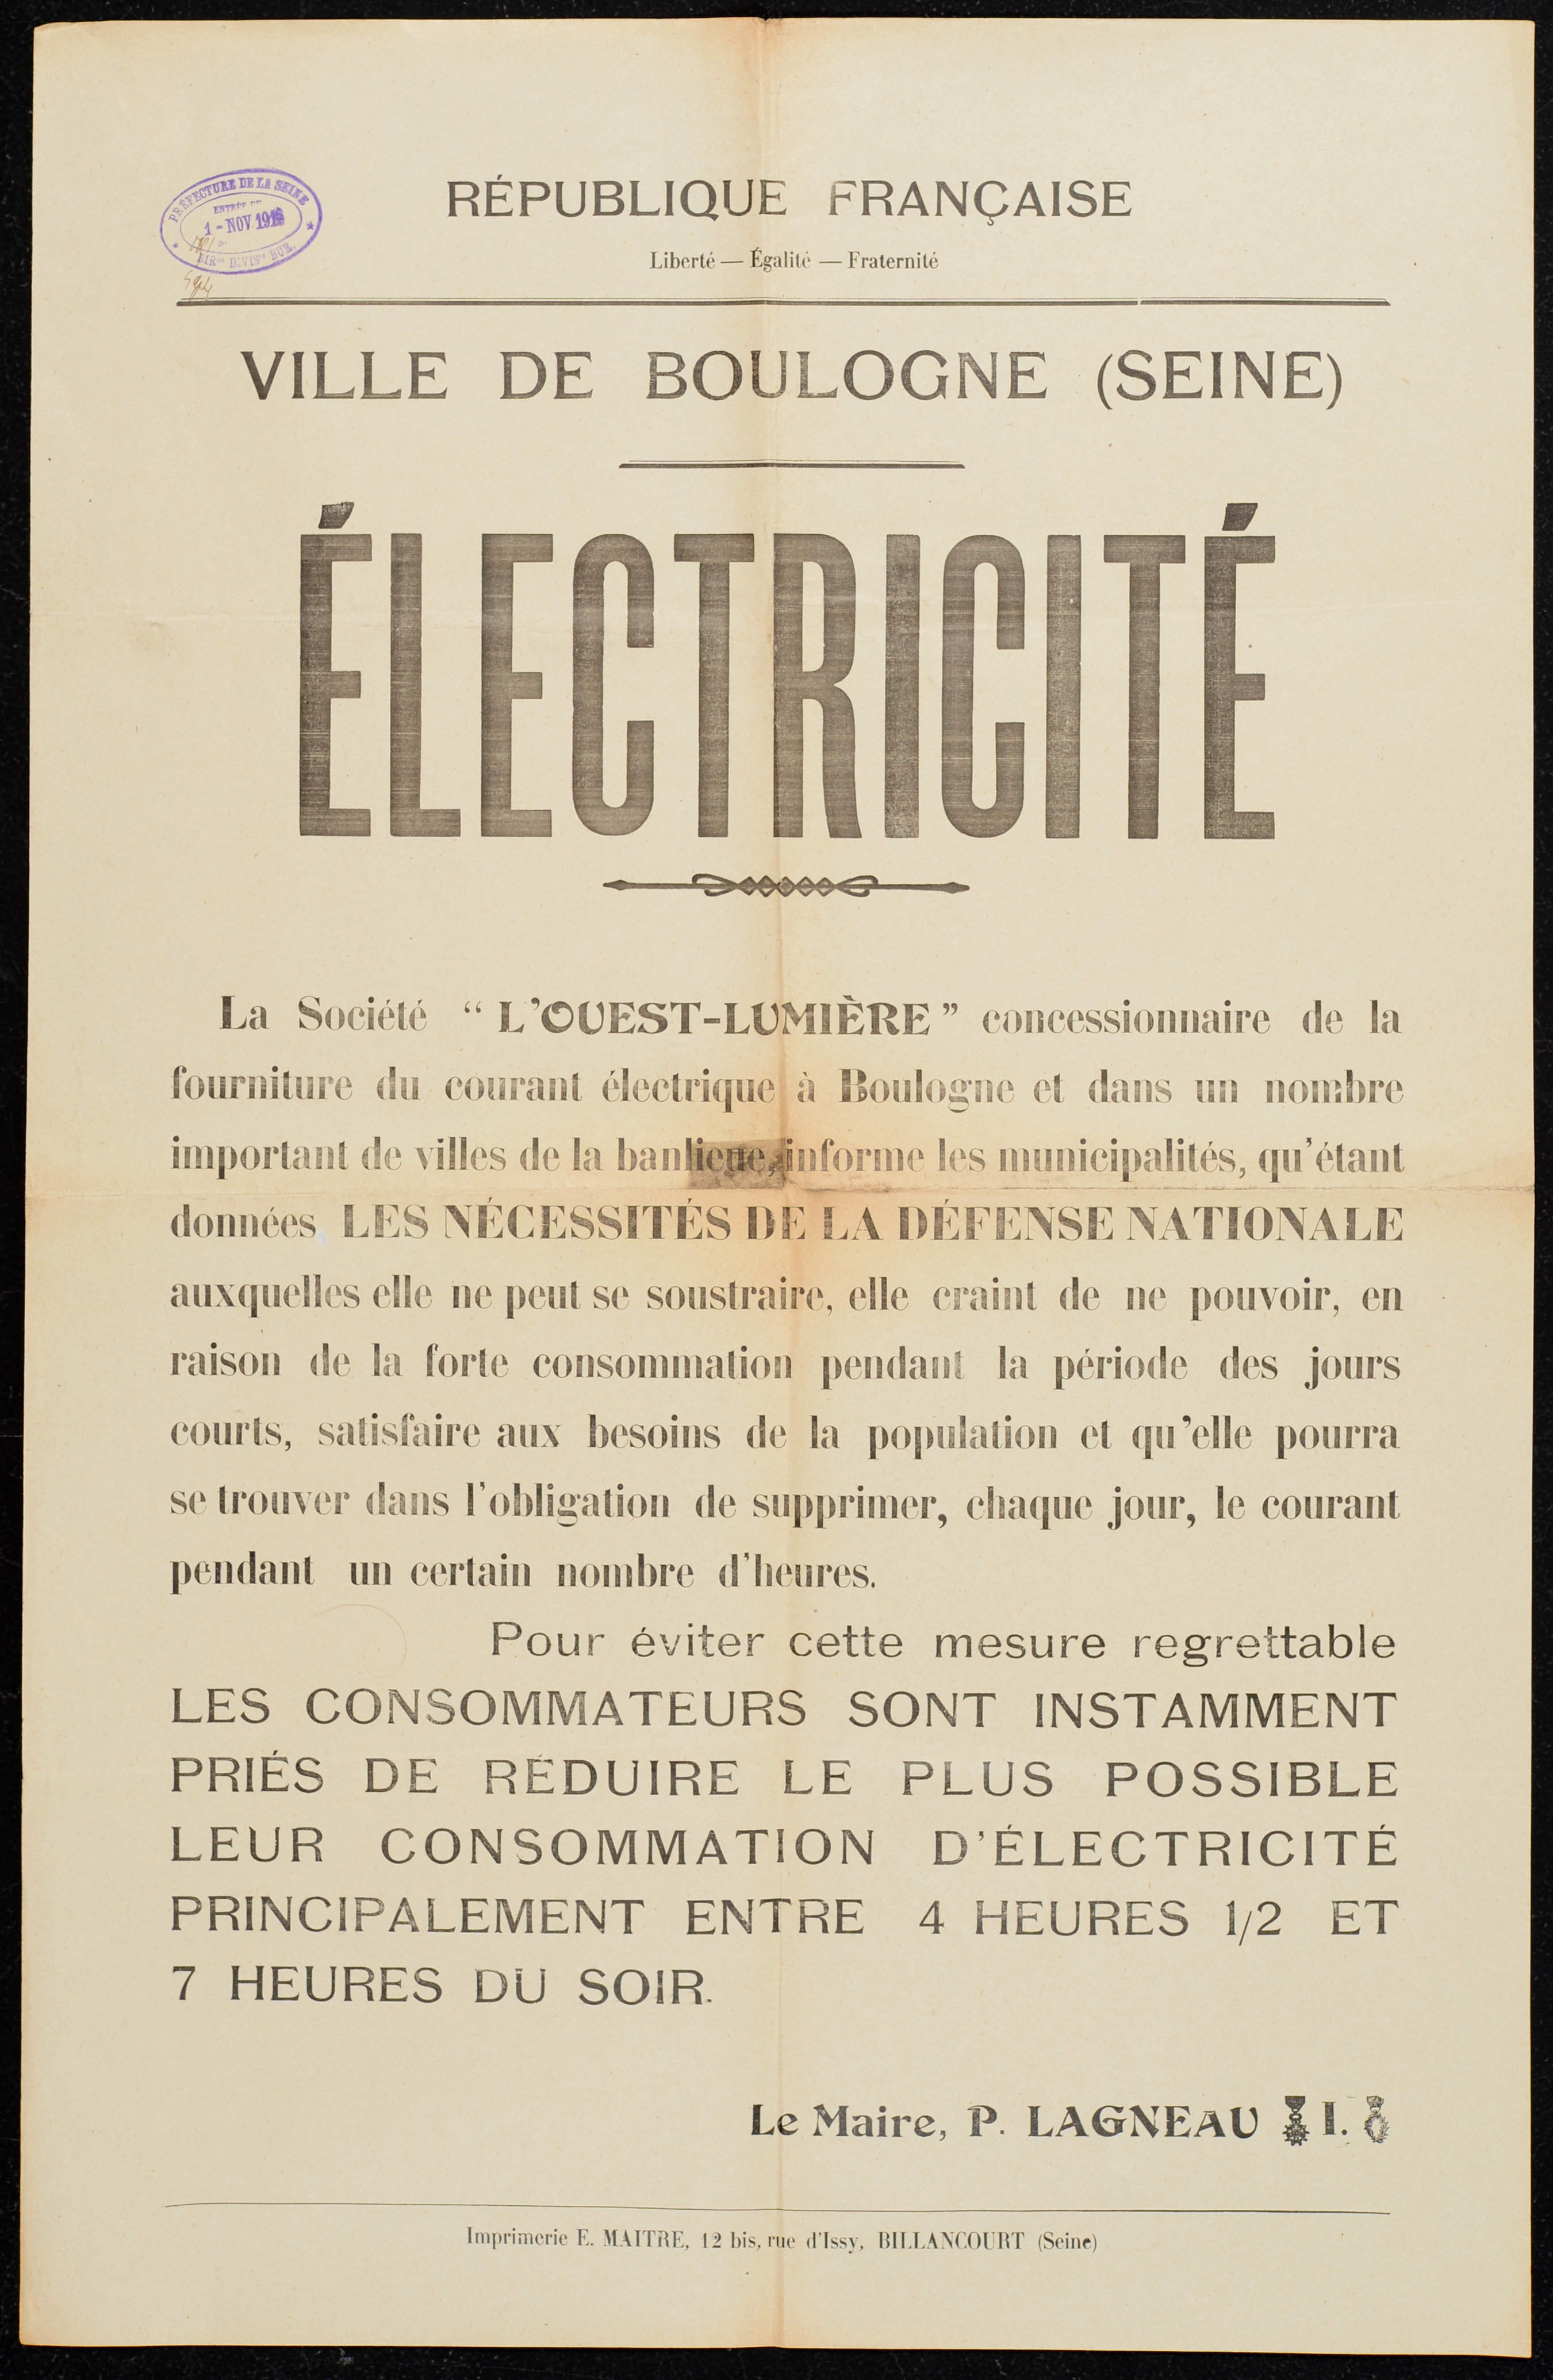 affiche : Electricité : pour les nécessités de la Défense nationale demande de réduire la consommation d'électricité